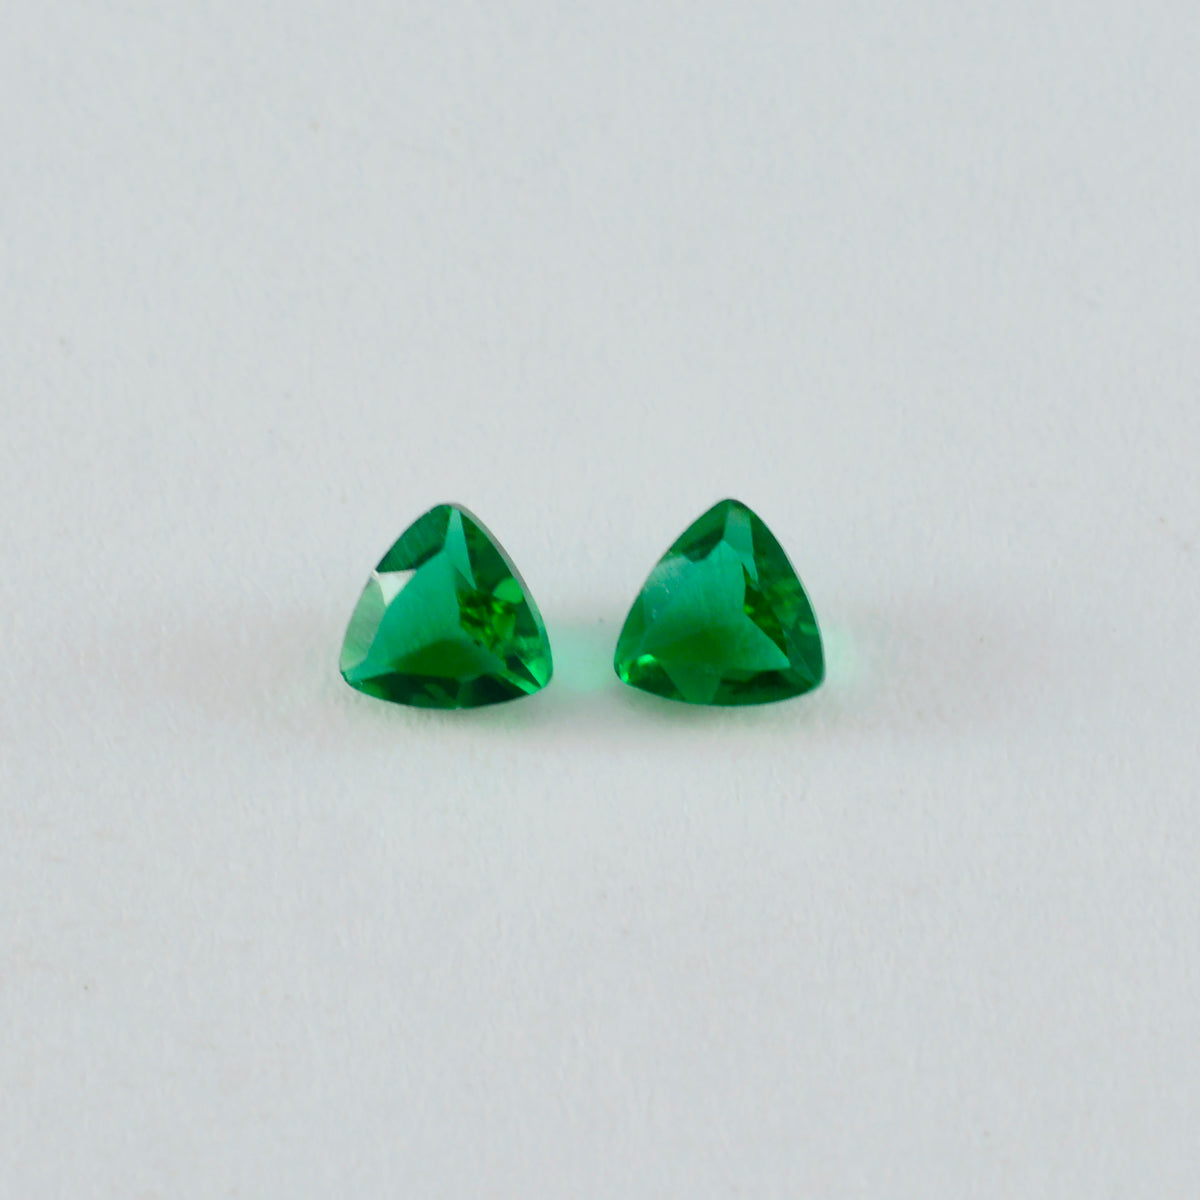 Riyogems 1 pieza de esmeralda verde CZ facetada de 10x10 mm con forma de trillón, una piedra preciosa suelta de calidad